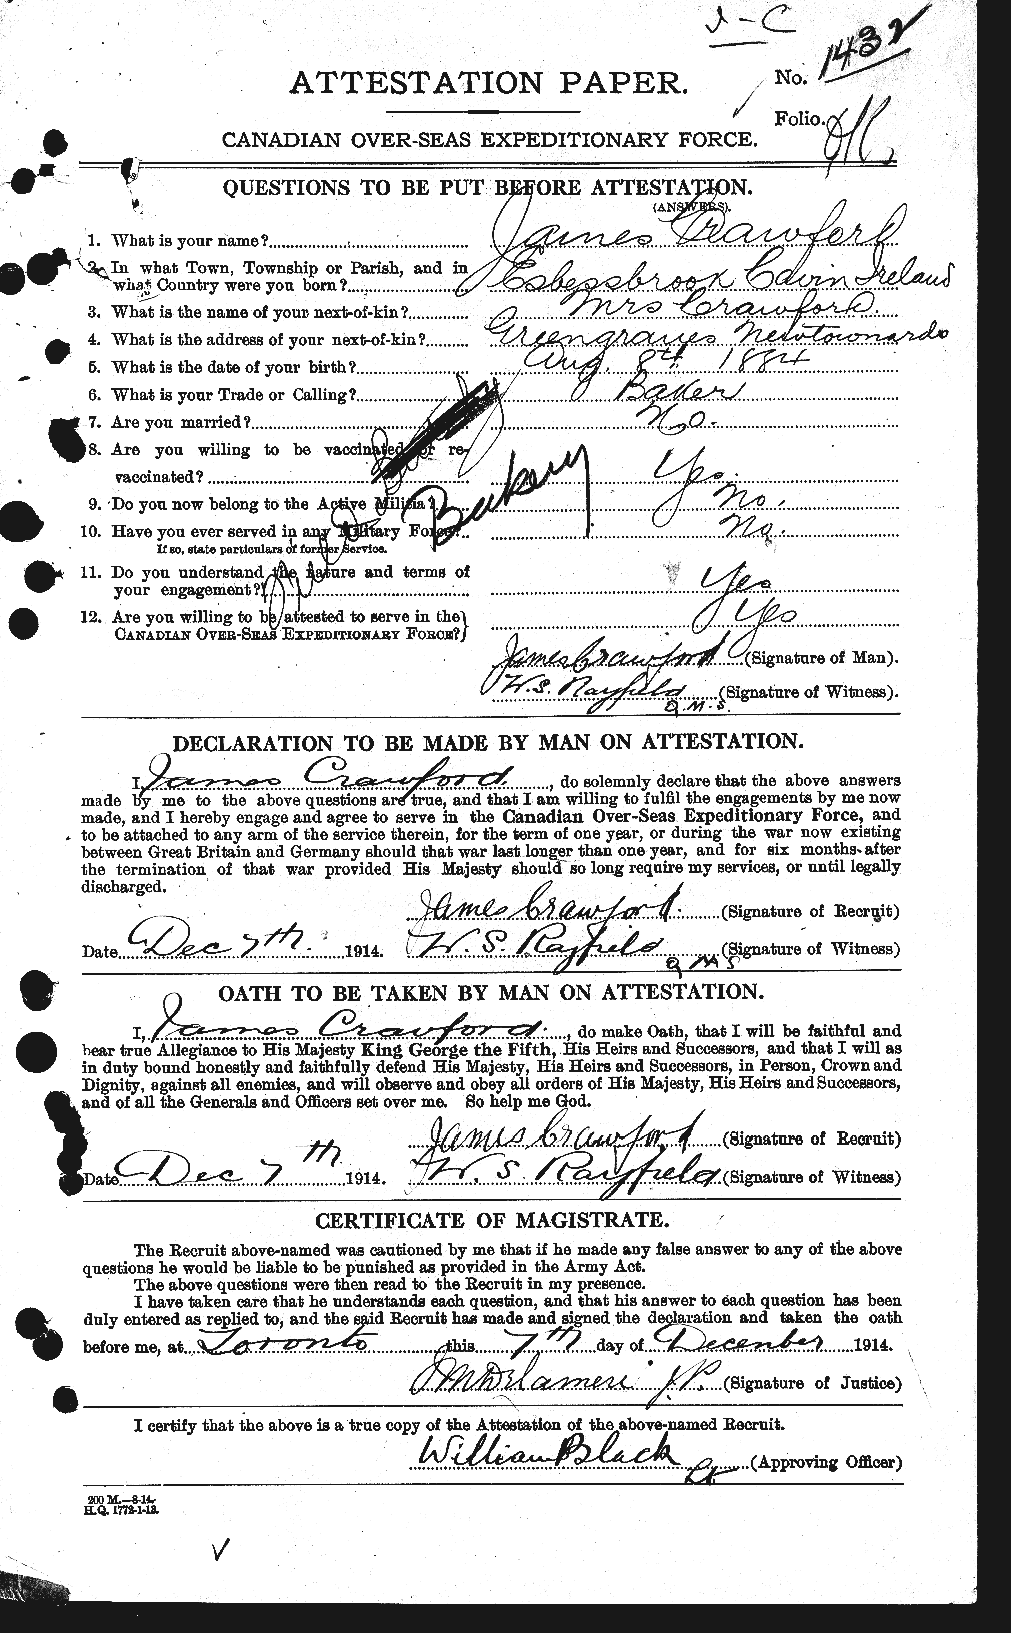 Dossiers du Personnel de la Première Guerre mondiale - CEC 062768a